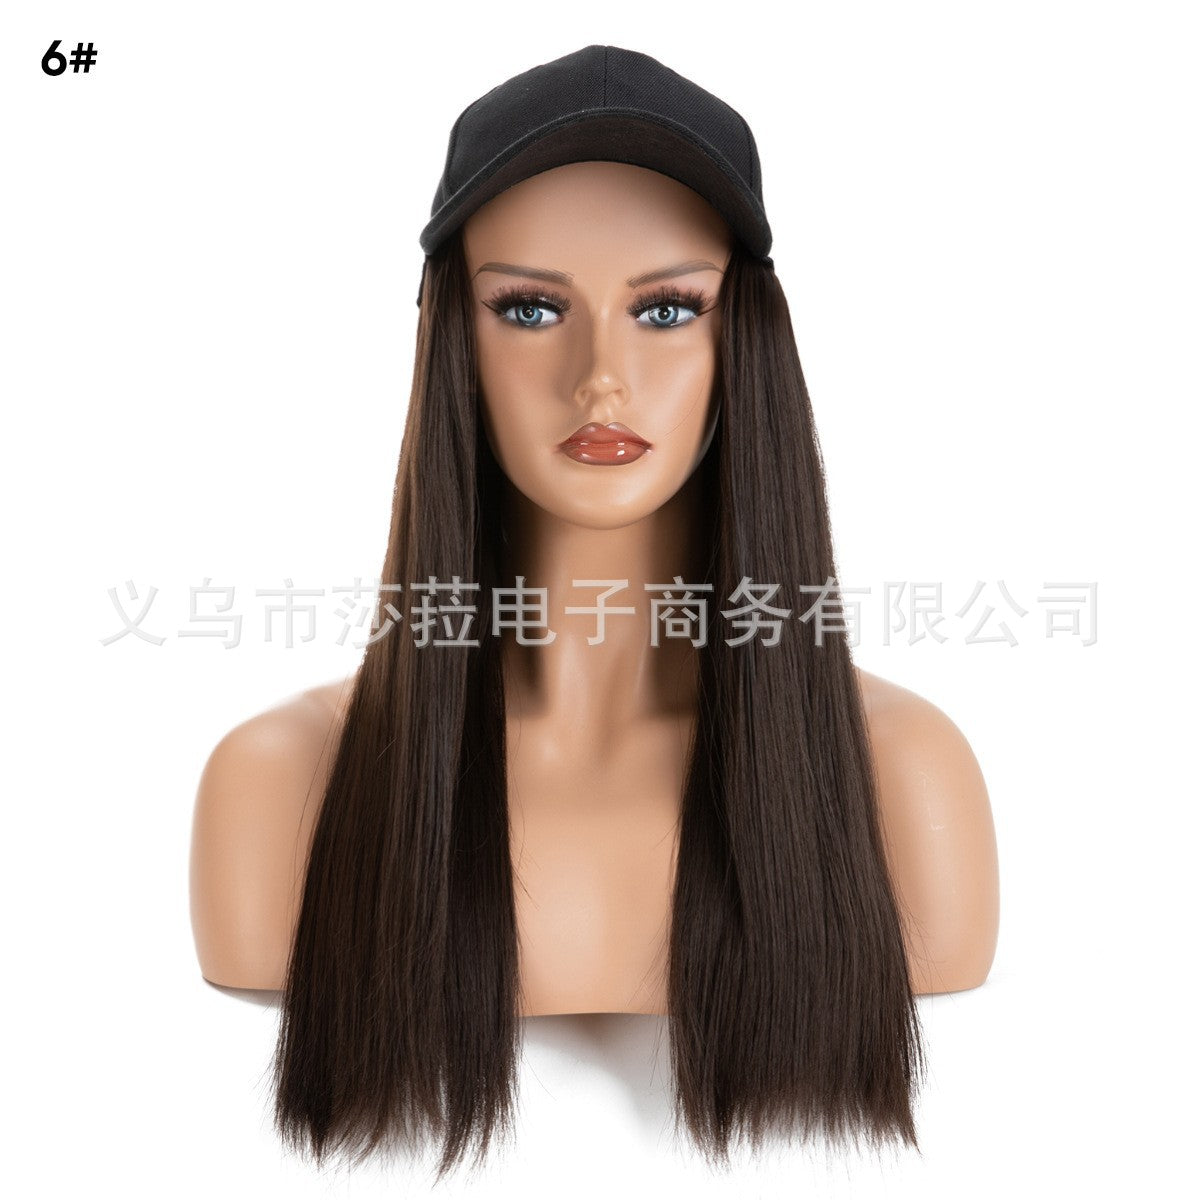 Peruka z długimi, prostymi włosami syntetycznymi, damska, z czapką z daszkiem, zintegrowaną treską na całą głowę, naturalny wygląd – czarna czapka, brązowe włosy